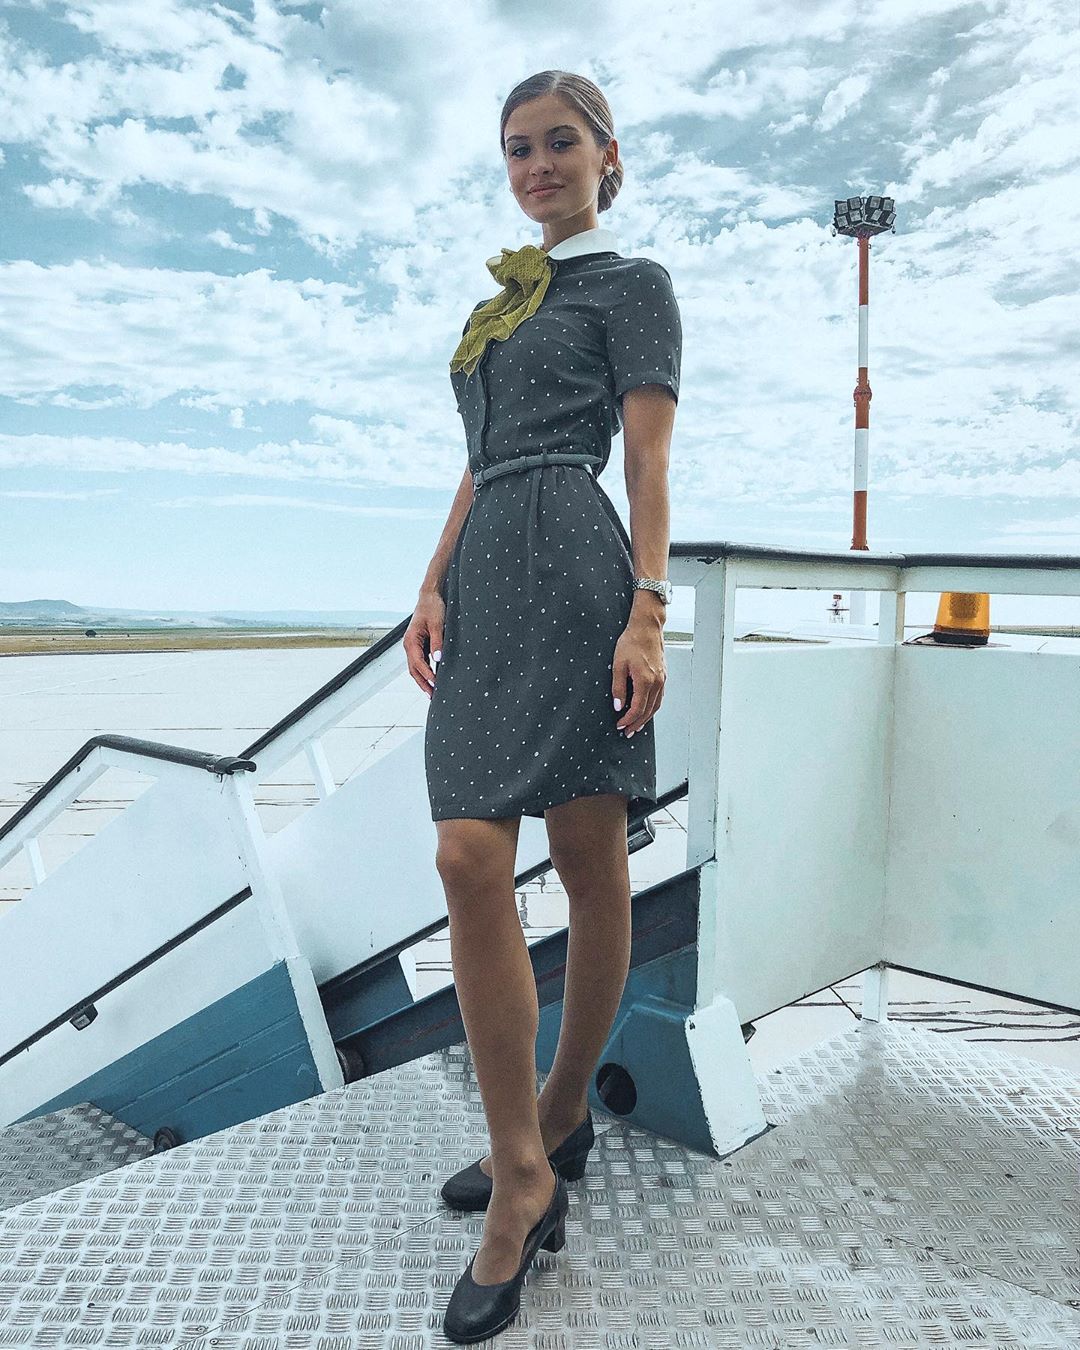 俄羅斯空姐環遊世界趴趴走 「極品正妹x天然美景」成人間最美風景